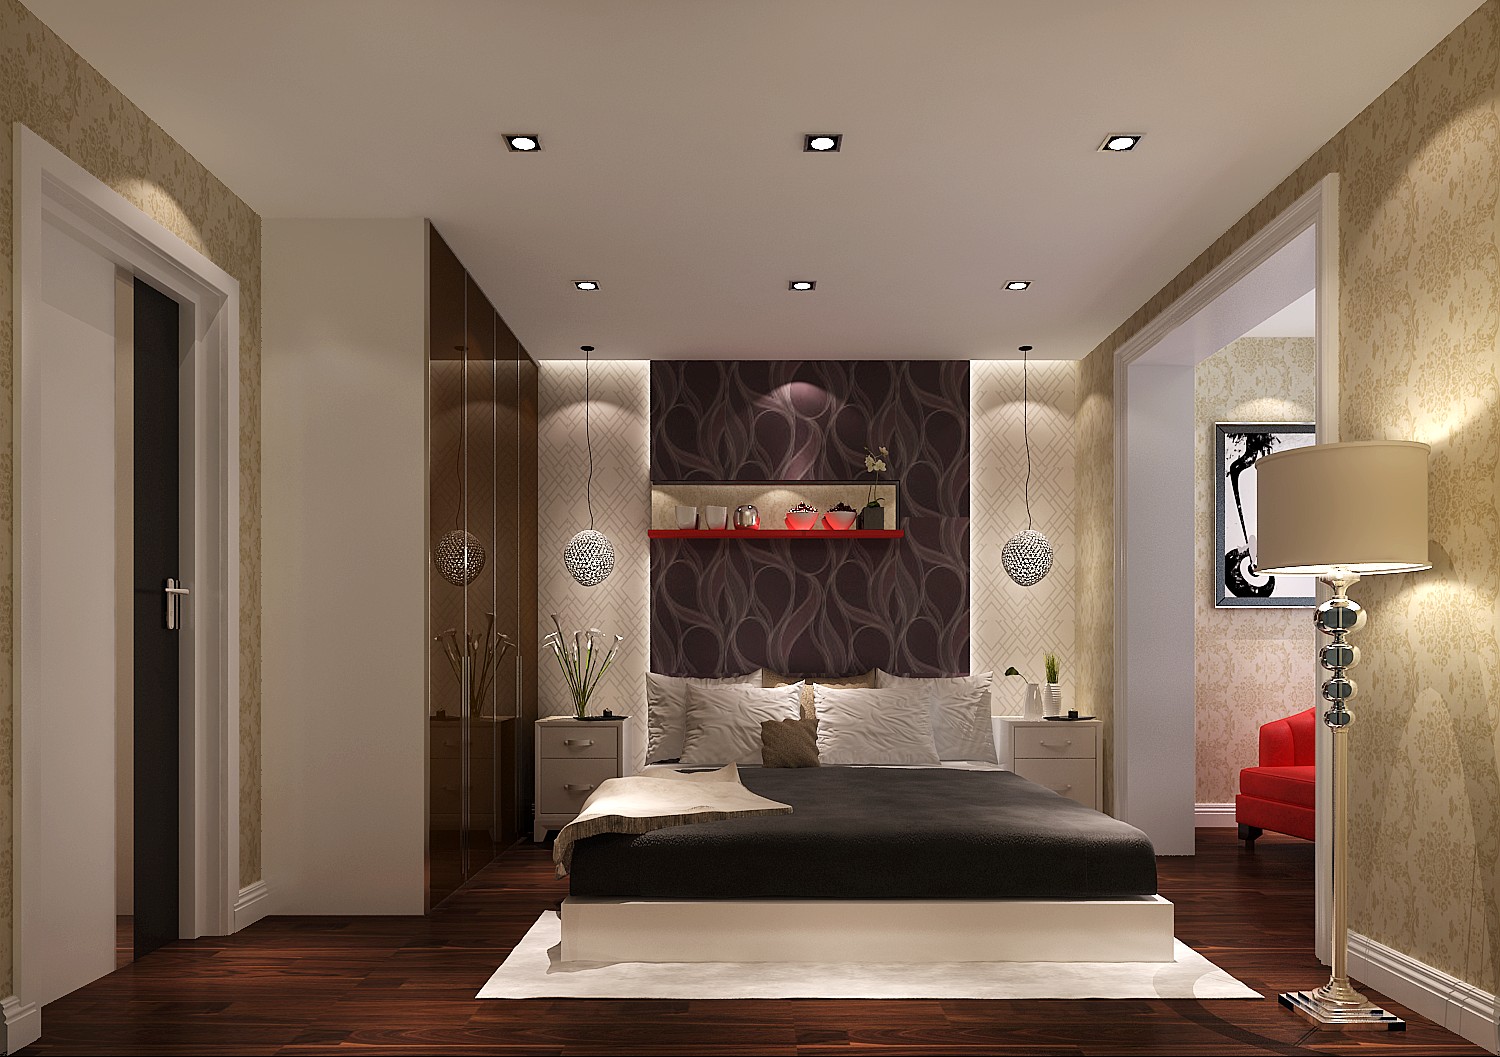 三居 高度国际 紫运西里 卧室图片来自凌军在80后的选择的分享